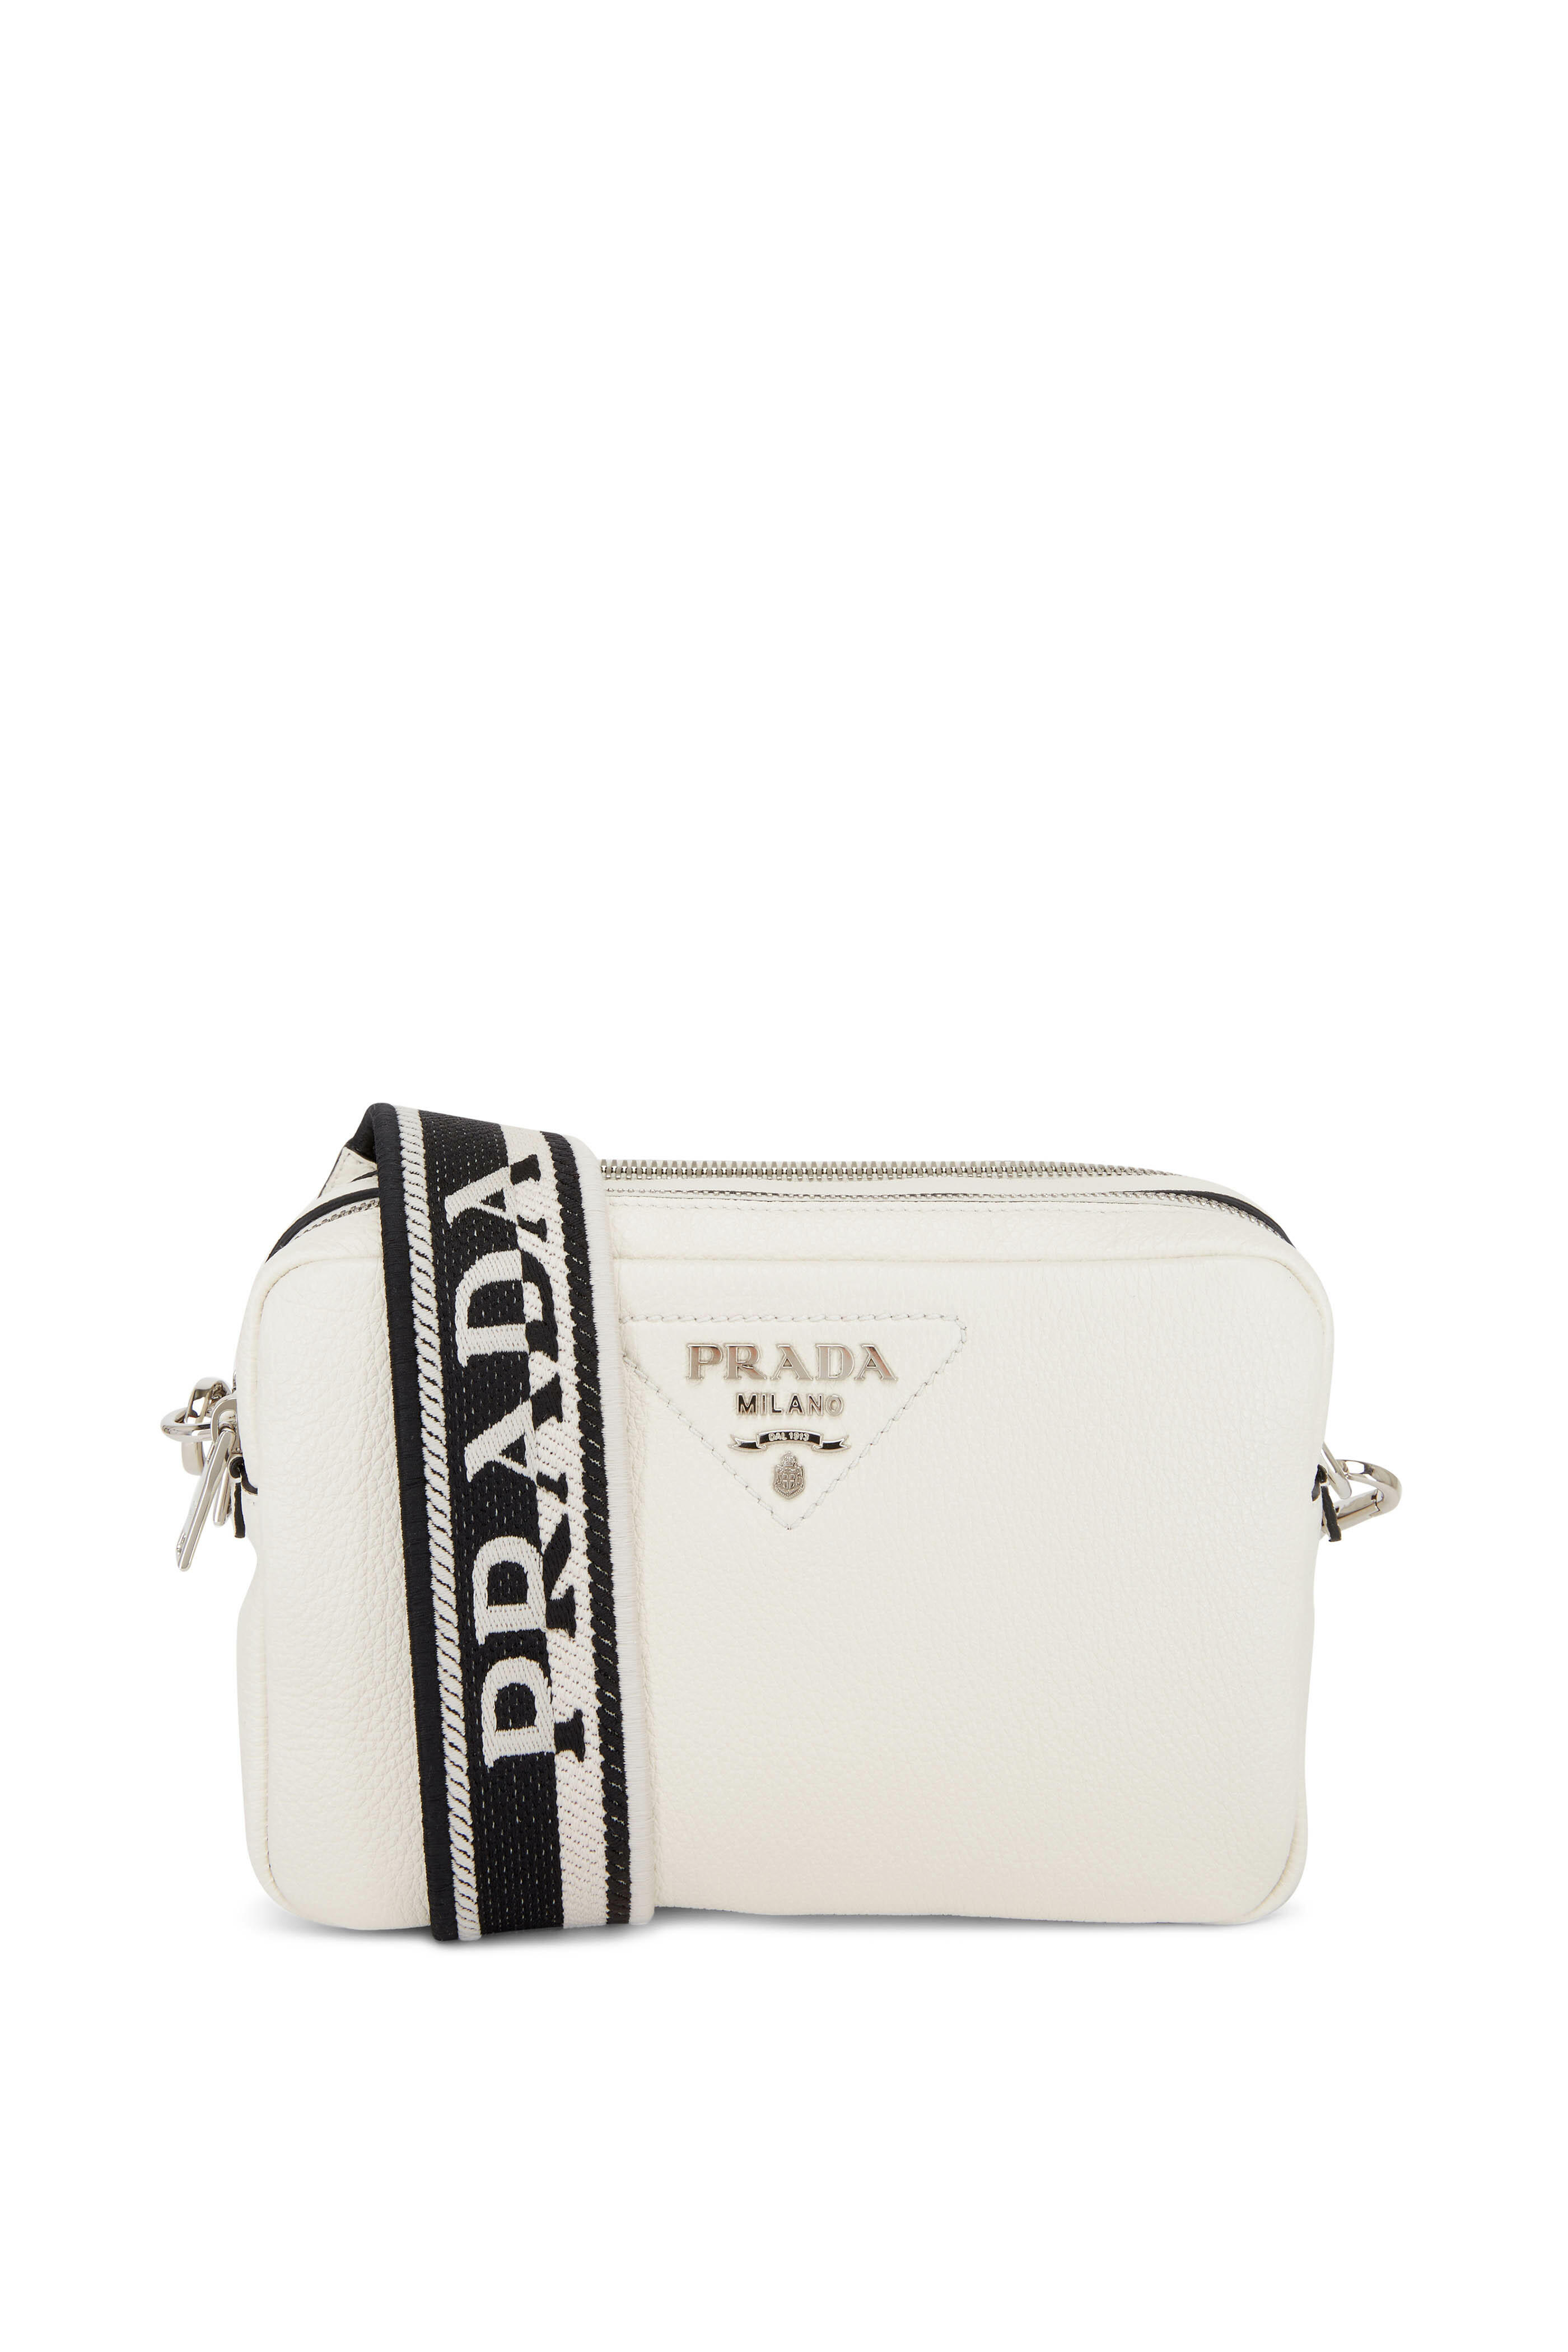 Prada, Bags, Brand New Prada Double Zip Camera Bag